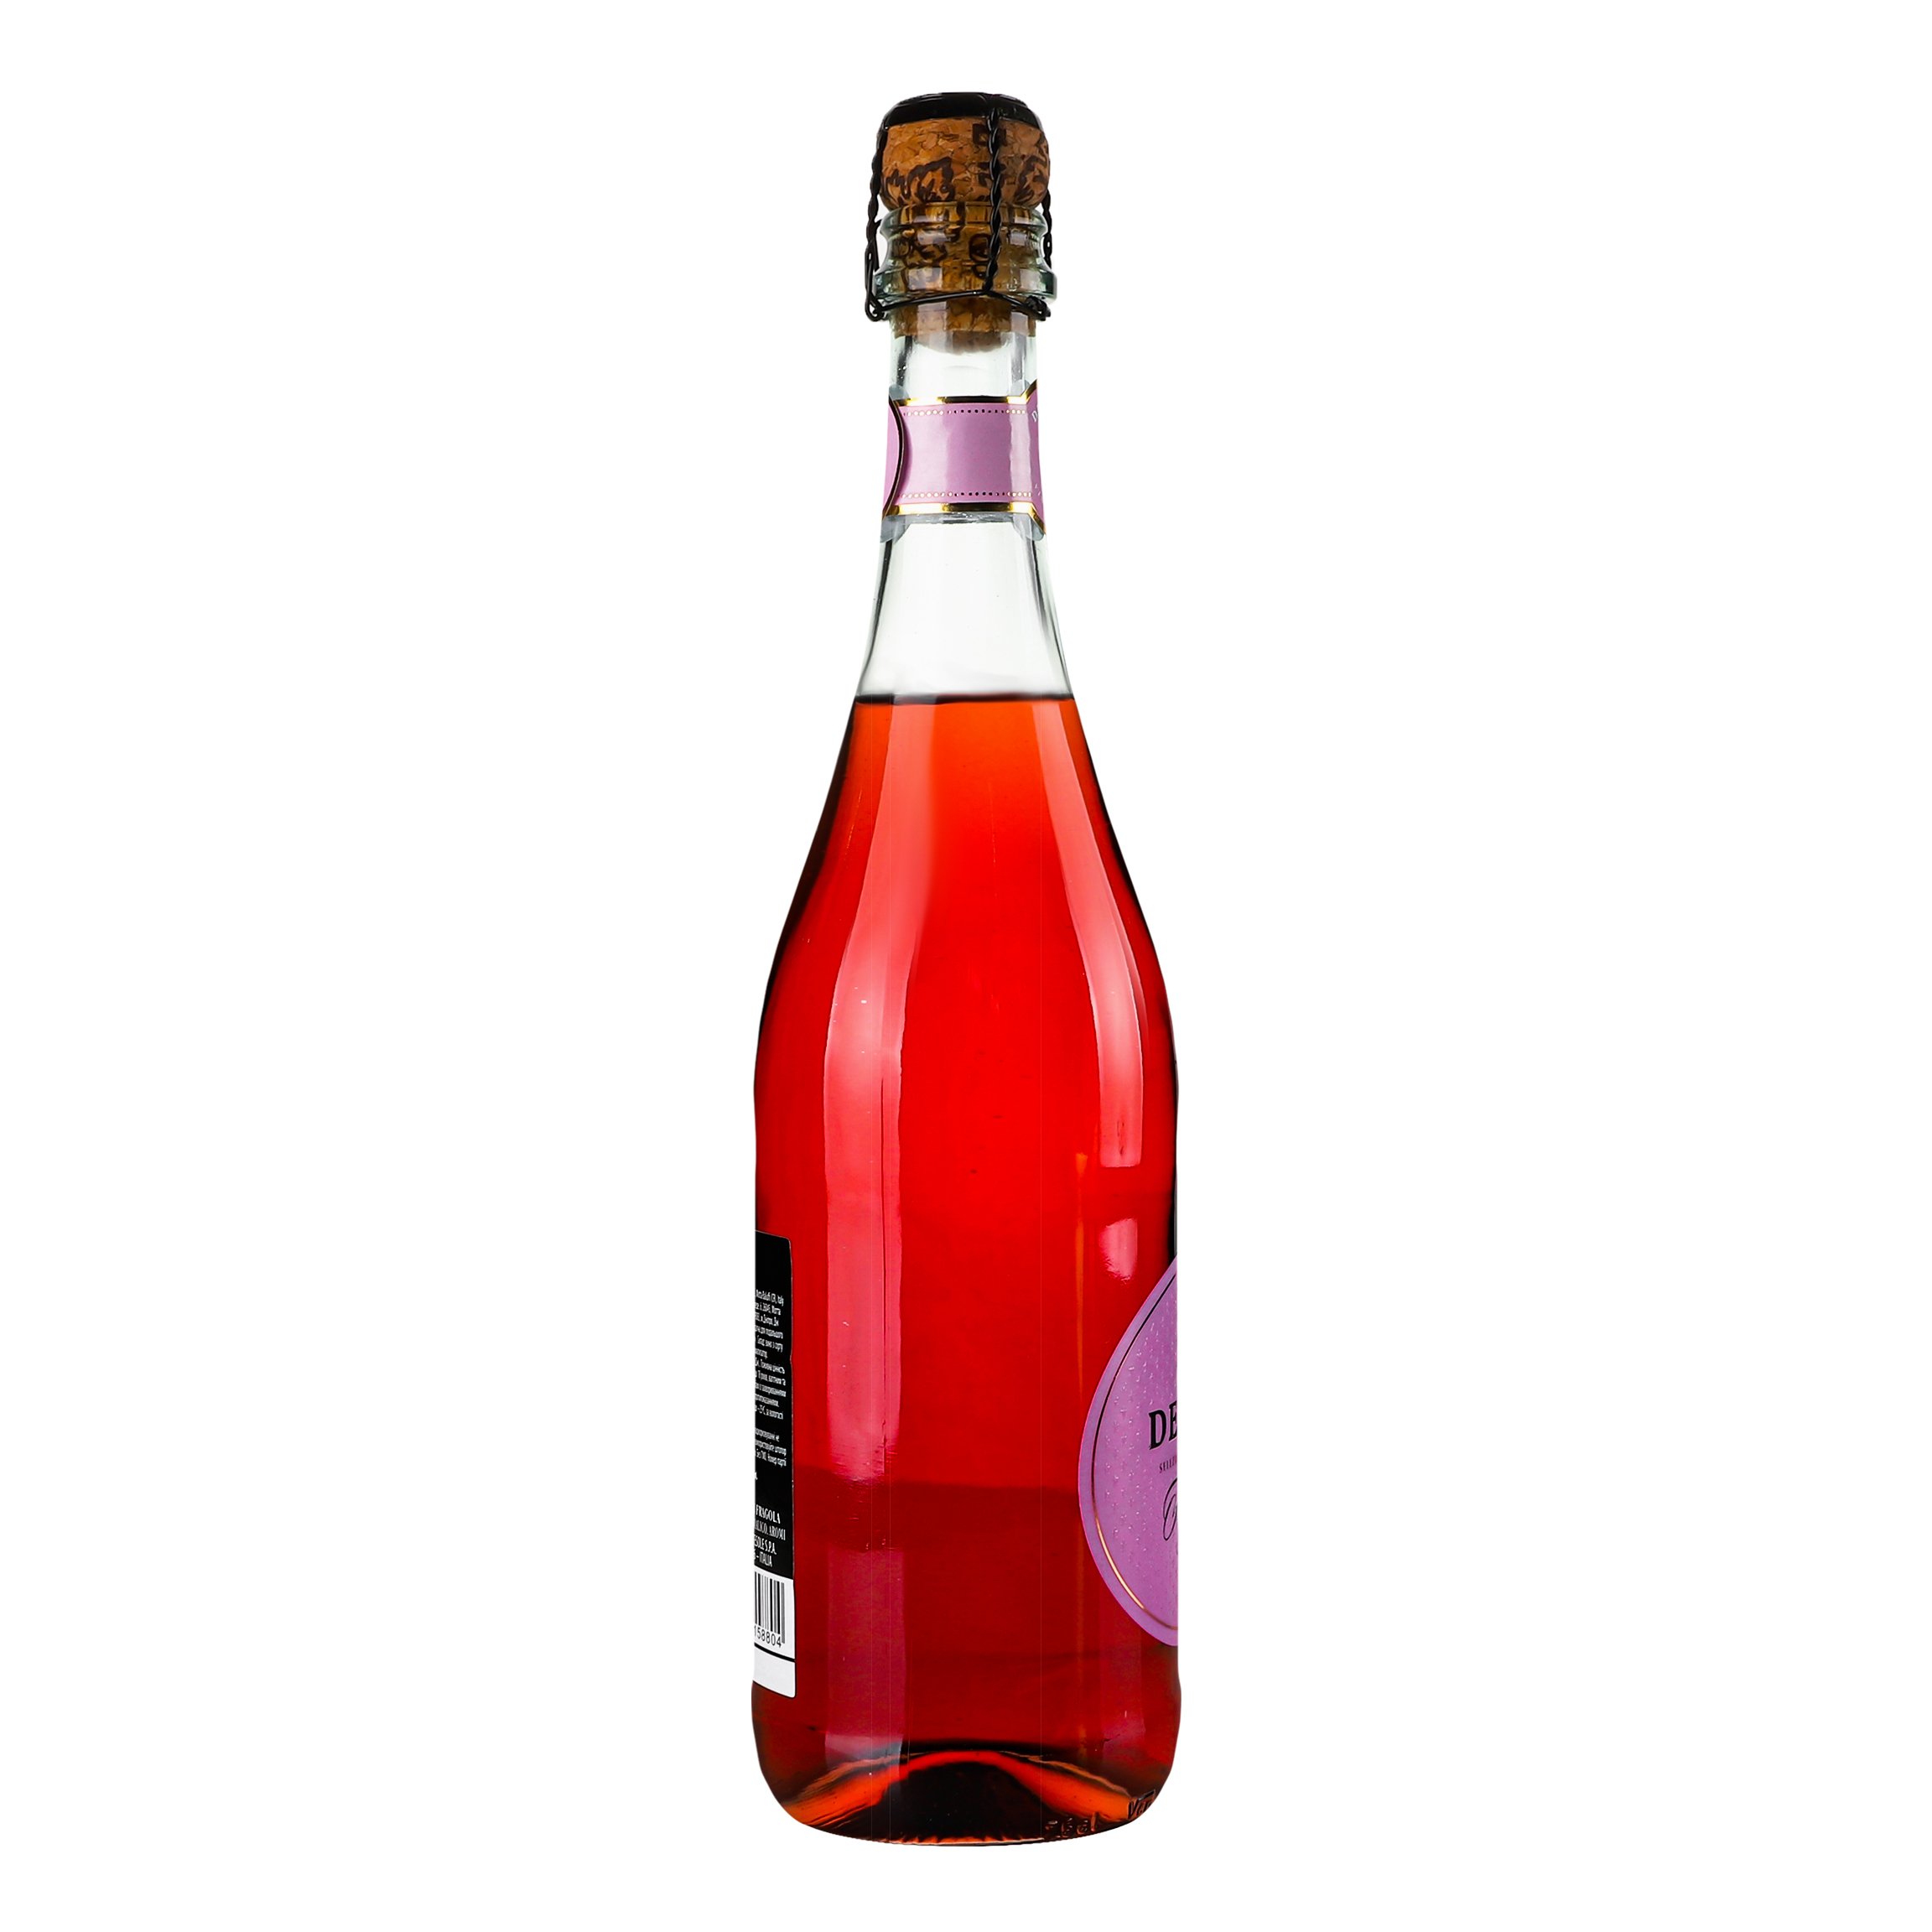 Ароматизированный напиток на основе вина Decordi Fragolino Rosato, розовый, полусладкий, 7,5%, 0,75 л - фото 2